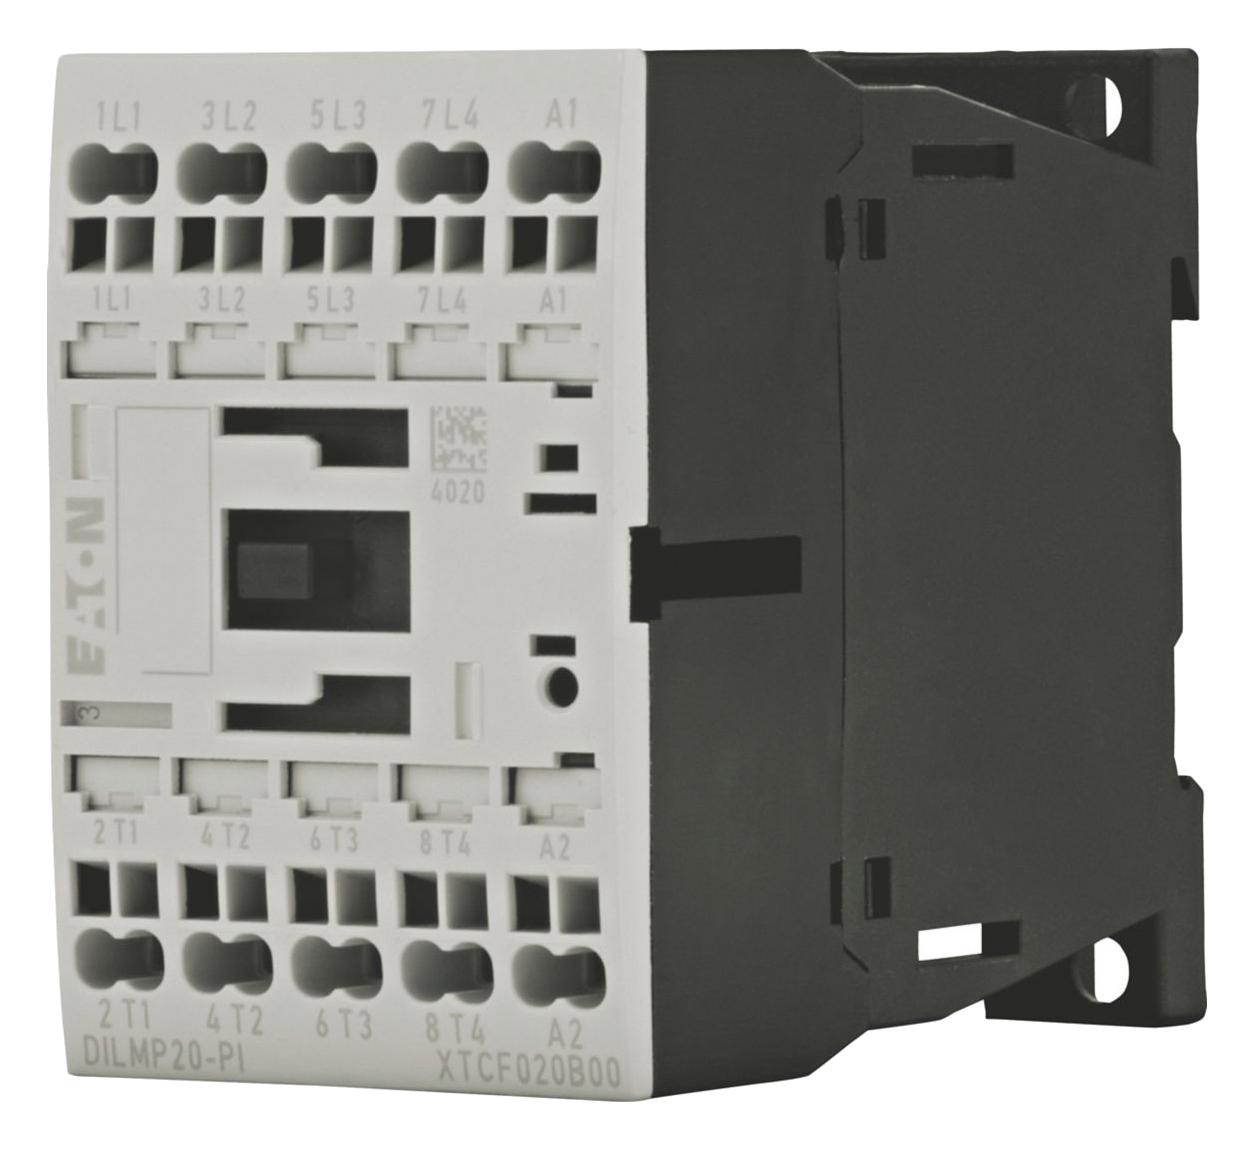 Eaton Moeller Dilmp20(110V50Hz,120V60Hz)-Pi Contactor, 4Pst-No, 110Vac, Din/panel